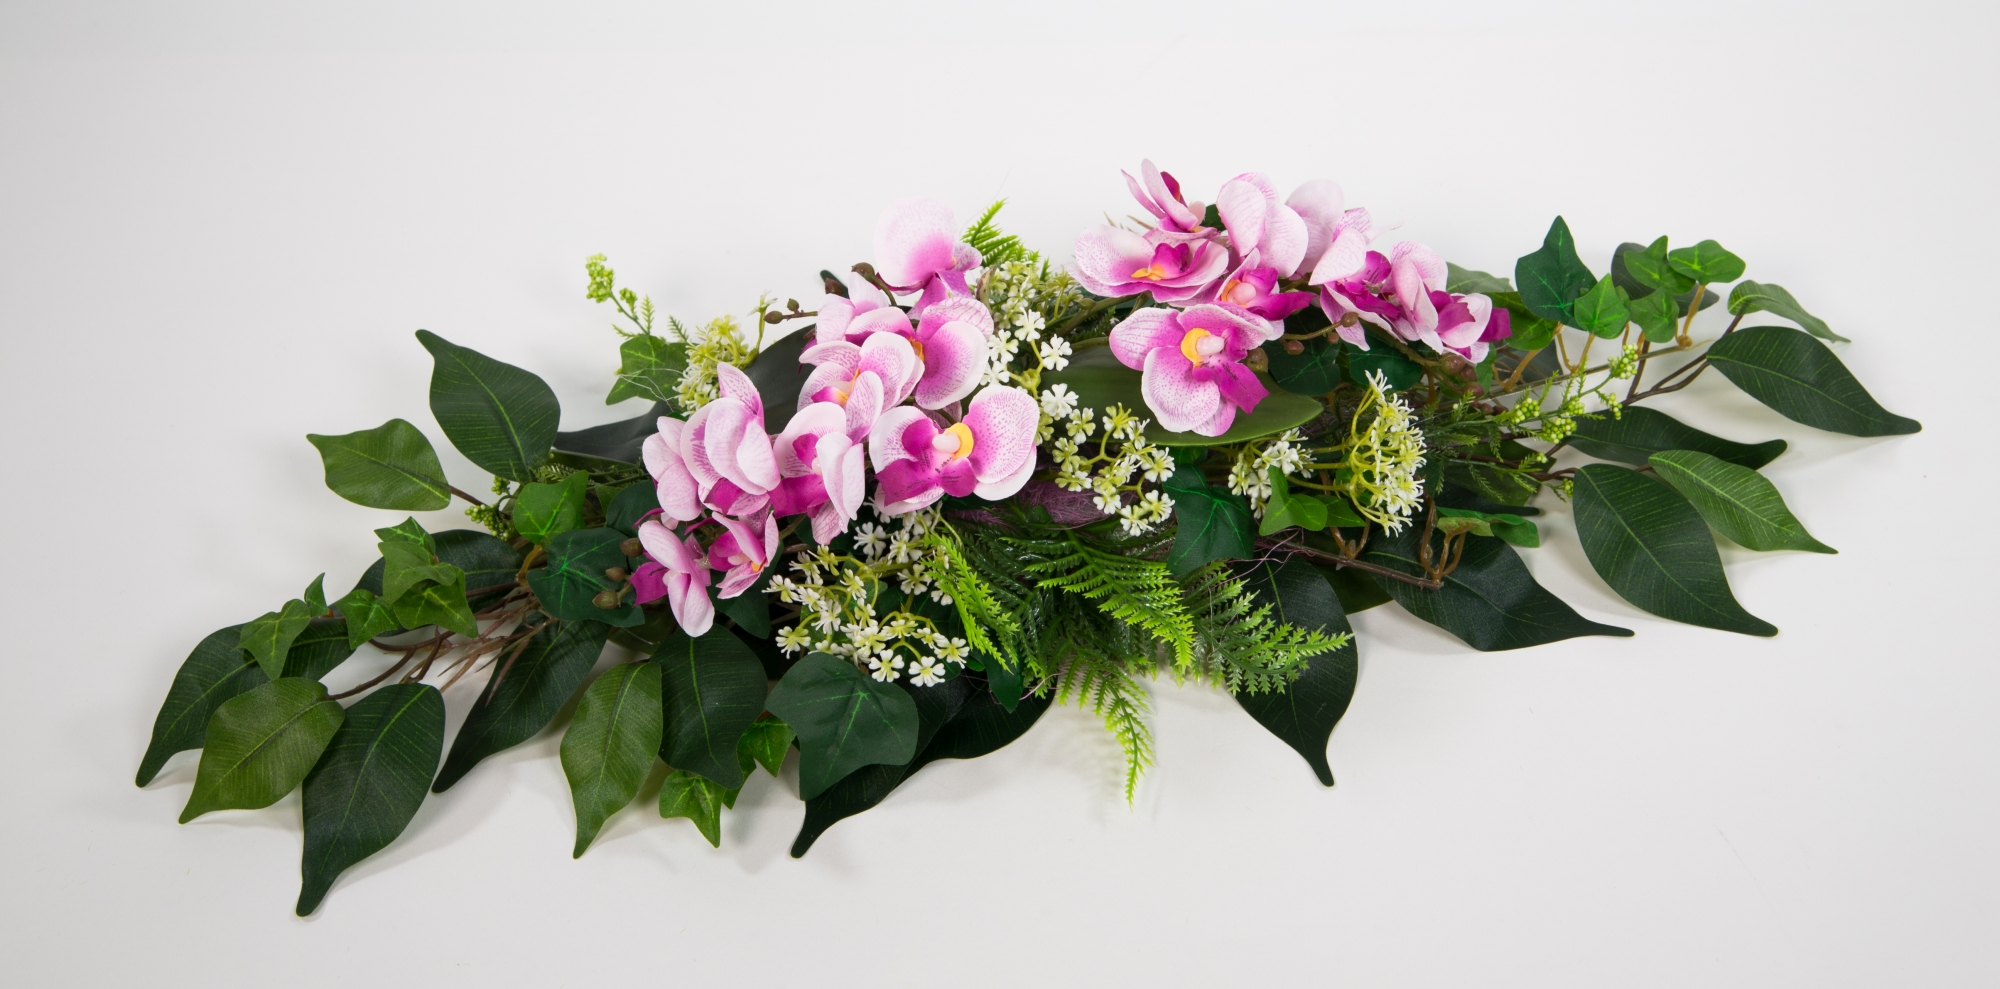 Orchideen-Tischgesteck länglich 60cm rosa-pink - Kunstblumen Seidenblumen künstliche Orchidee Blumen